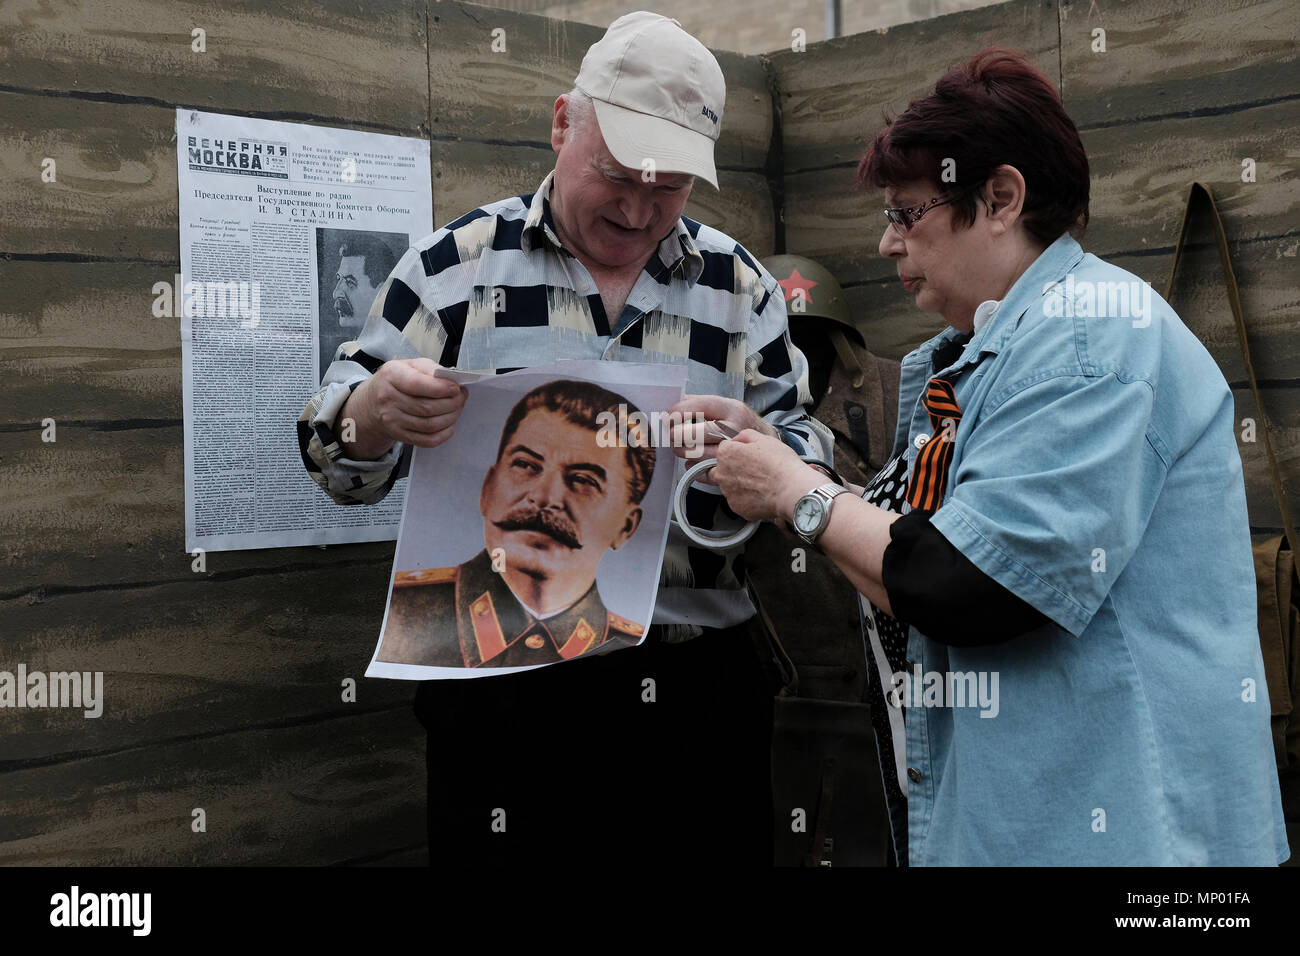 Transnistrischen Zivilisten vorbereiten, das Foto von Stalin in einem Denkmal stand während der Tag des Sieges am 9. Mai, der den Sieg der Sowjetunion über Nazi-deutschland erinnert in der Stadt Bender de-facto-offizieller Name Bendery innerhalb der international anerkannten Grenzen der Republik Moldau unter der De-facto-Kontrolle der unerkannte Pridnestrovian Moldauischen Republik auch als Transnistrien (PMR) seit 1992 zu befestigen. Stockfoto